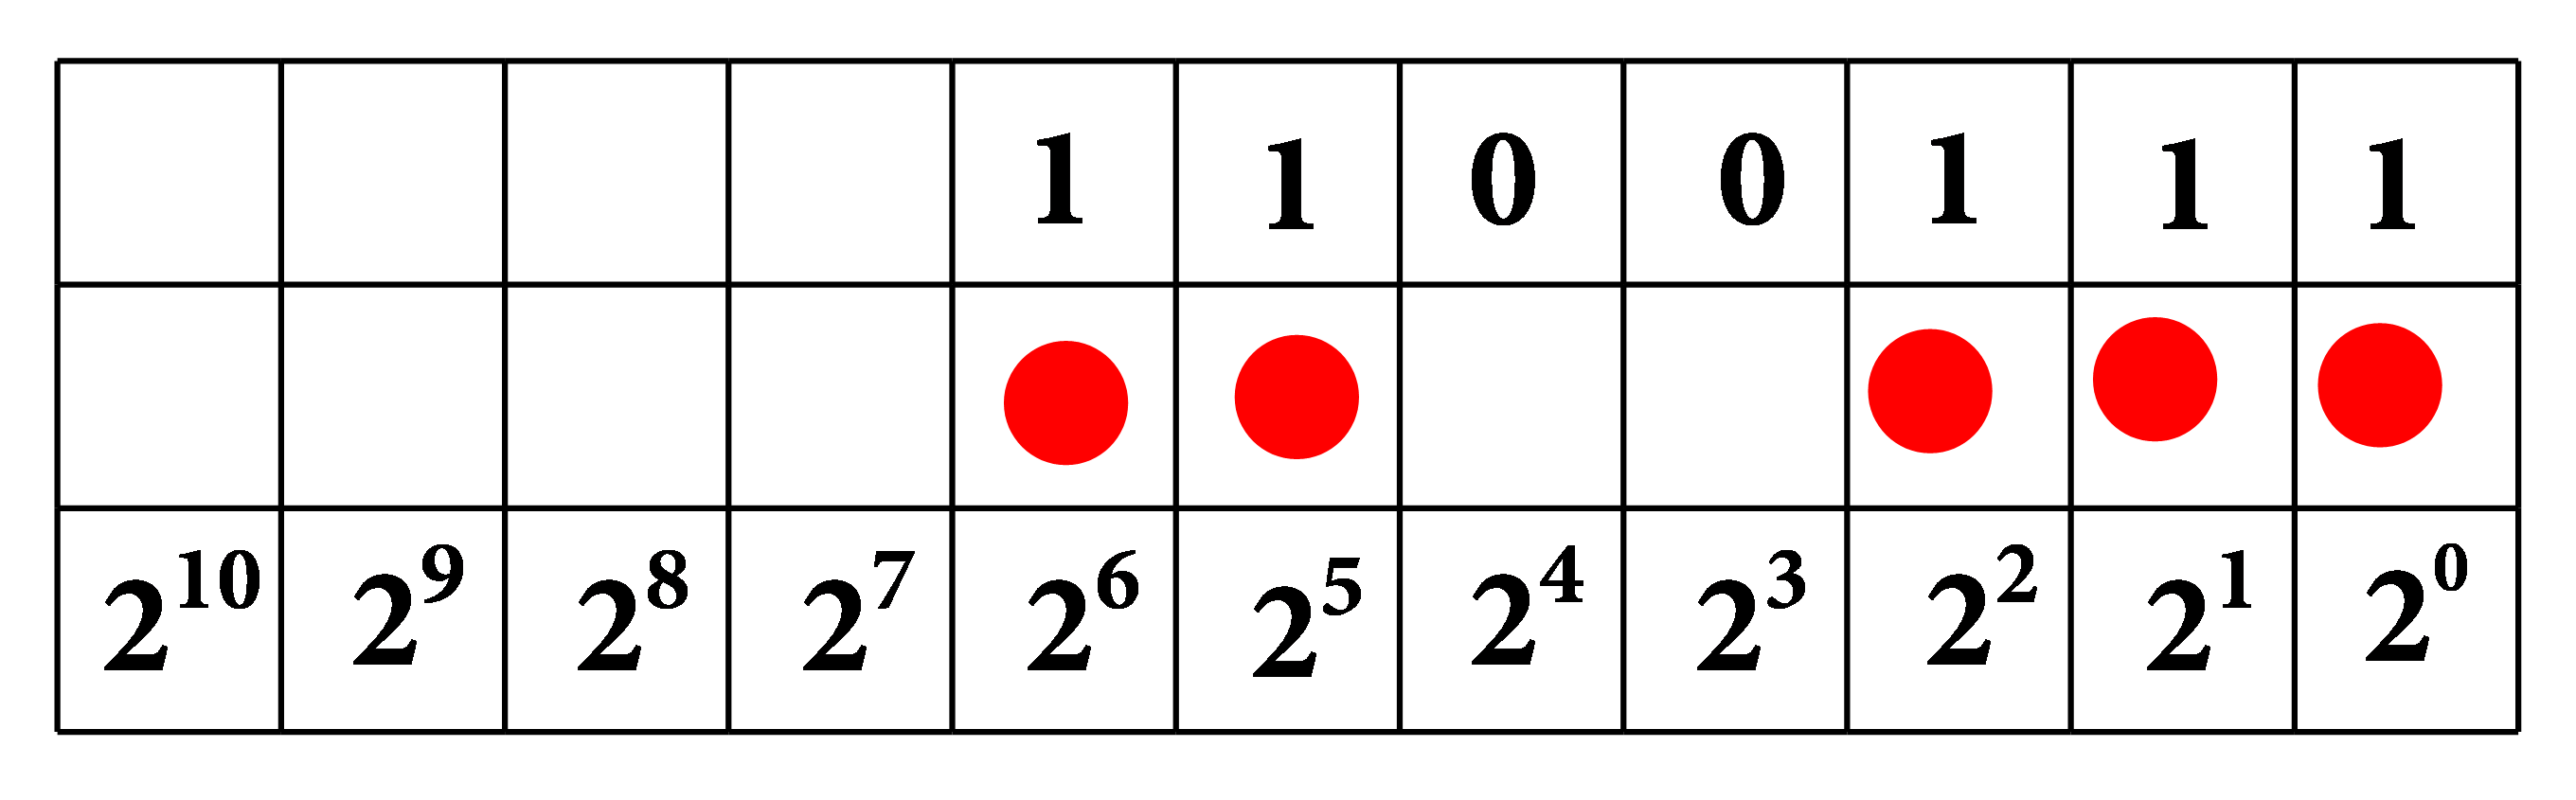 U tablici je prikazan binarni prikaz broja 103 u zapisu 1100111. Broj je prikazan i grafički, crvenim krugovima u prvom, drugom, trećem, šestom i sedmom mjestu tablice (gledano zdesna ulijevo).